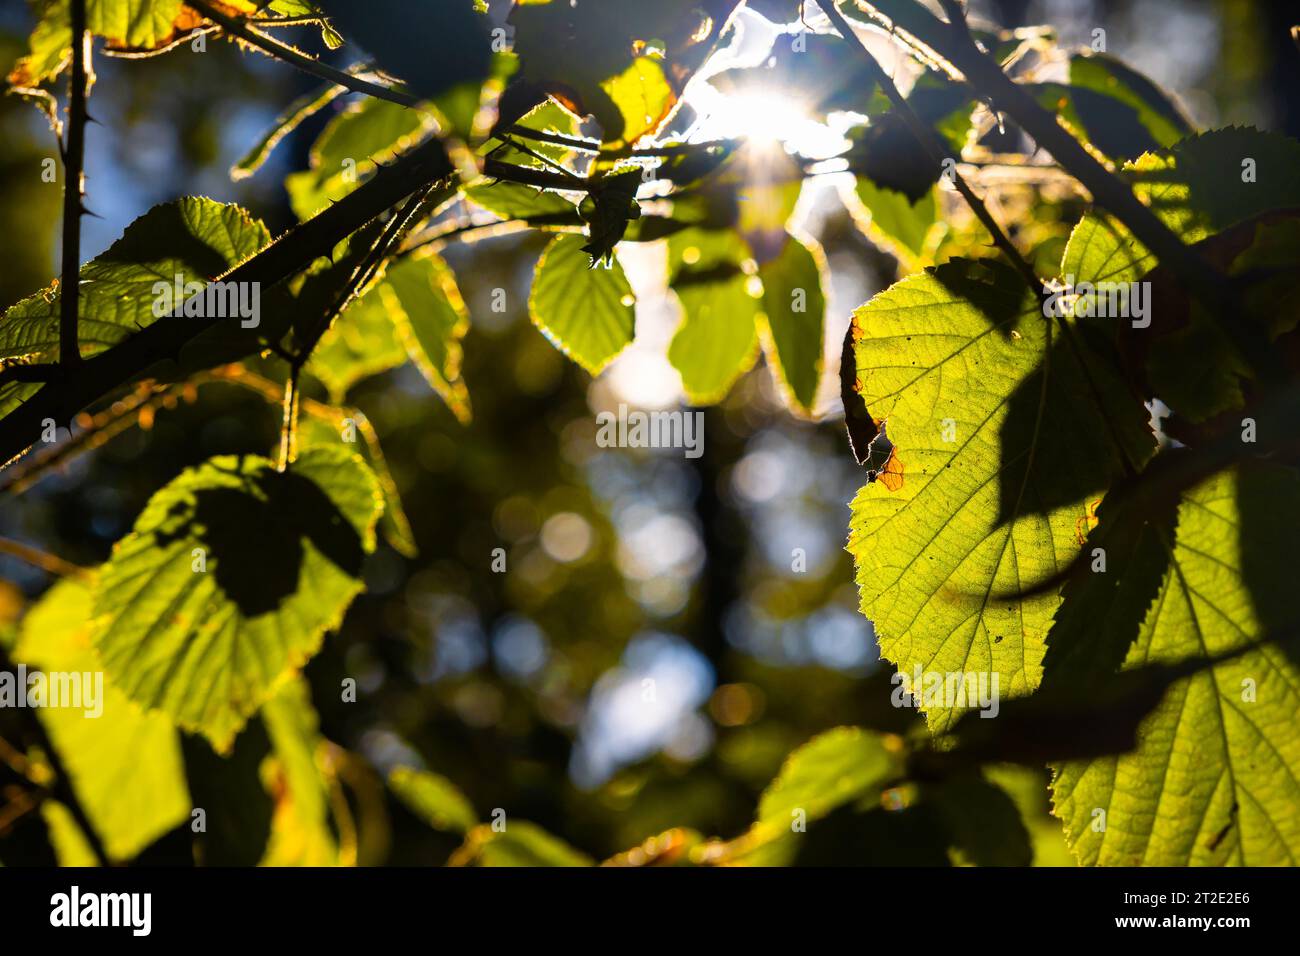 feuilles illuminées par la lumière du soleil dans la forêt. photo de fond nature ou environnement. concept de zéro carbone net ou empreinte carbone. Banque D'Images